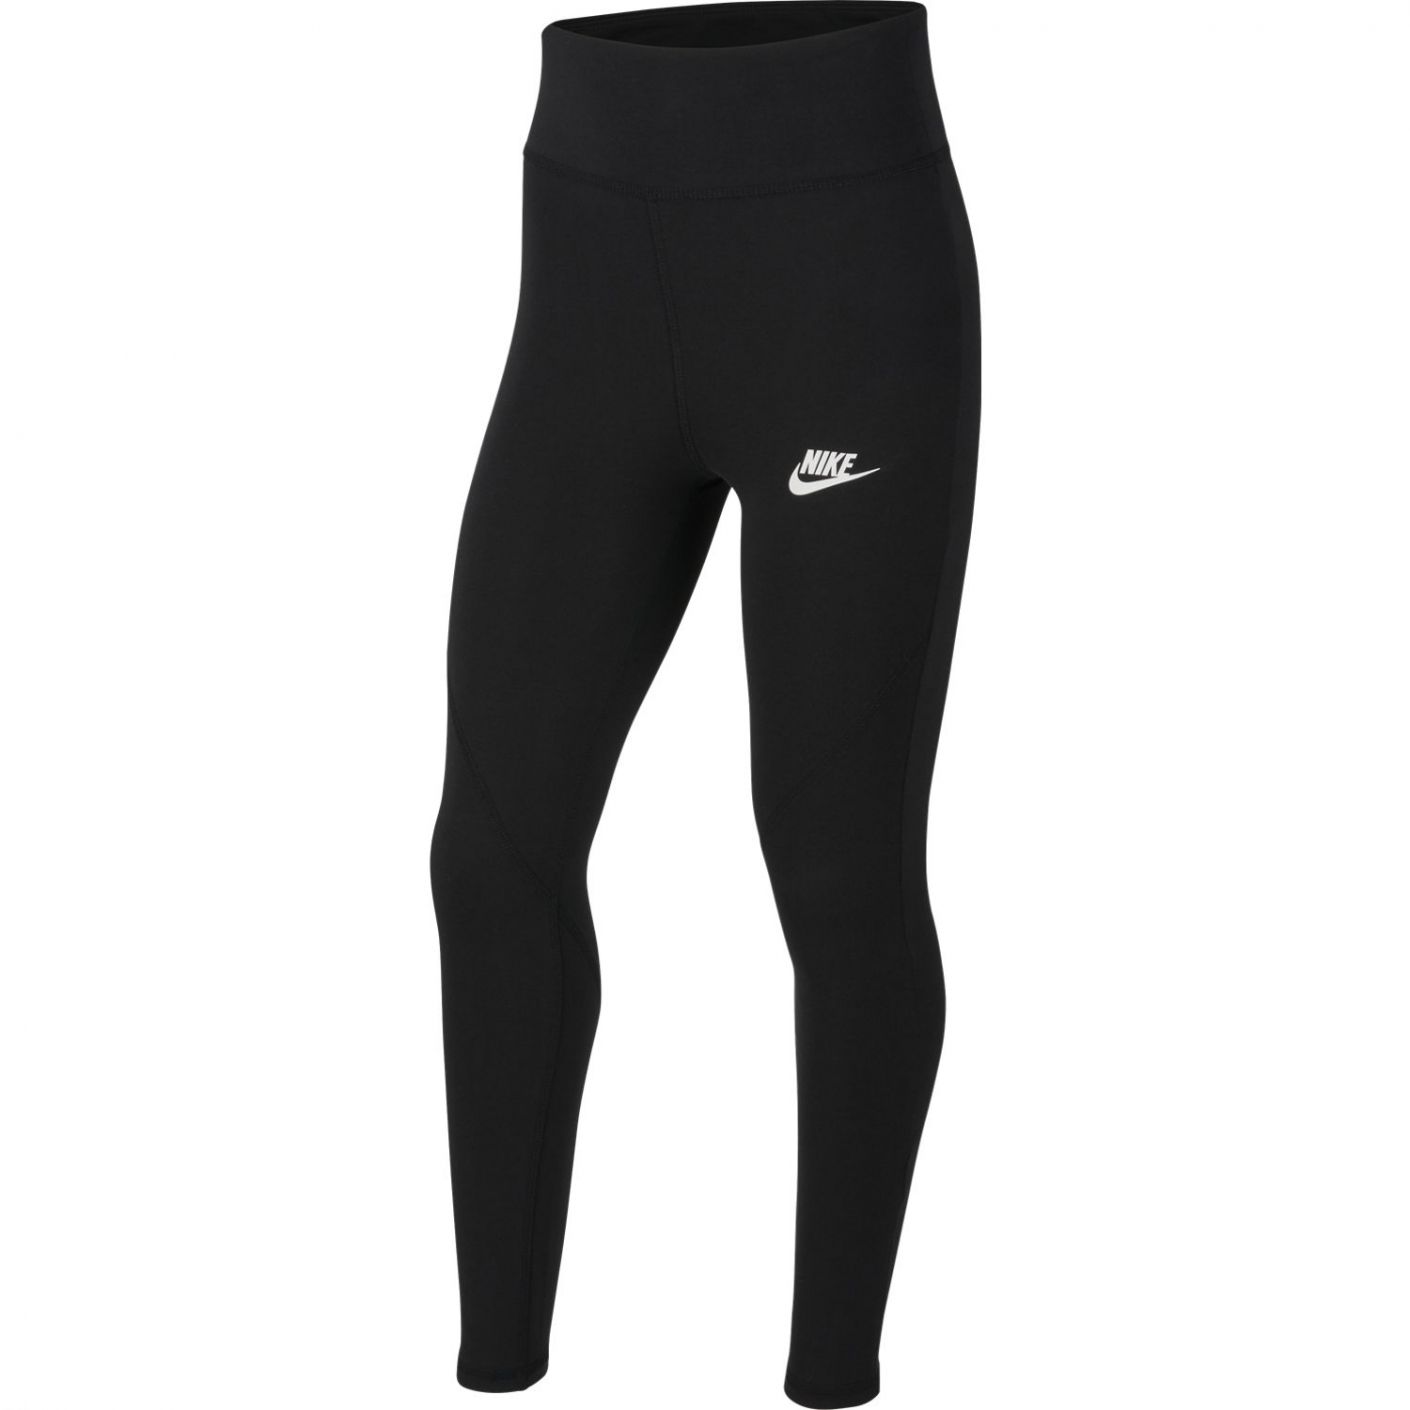 Nike Favorites Leggings Black for Girls